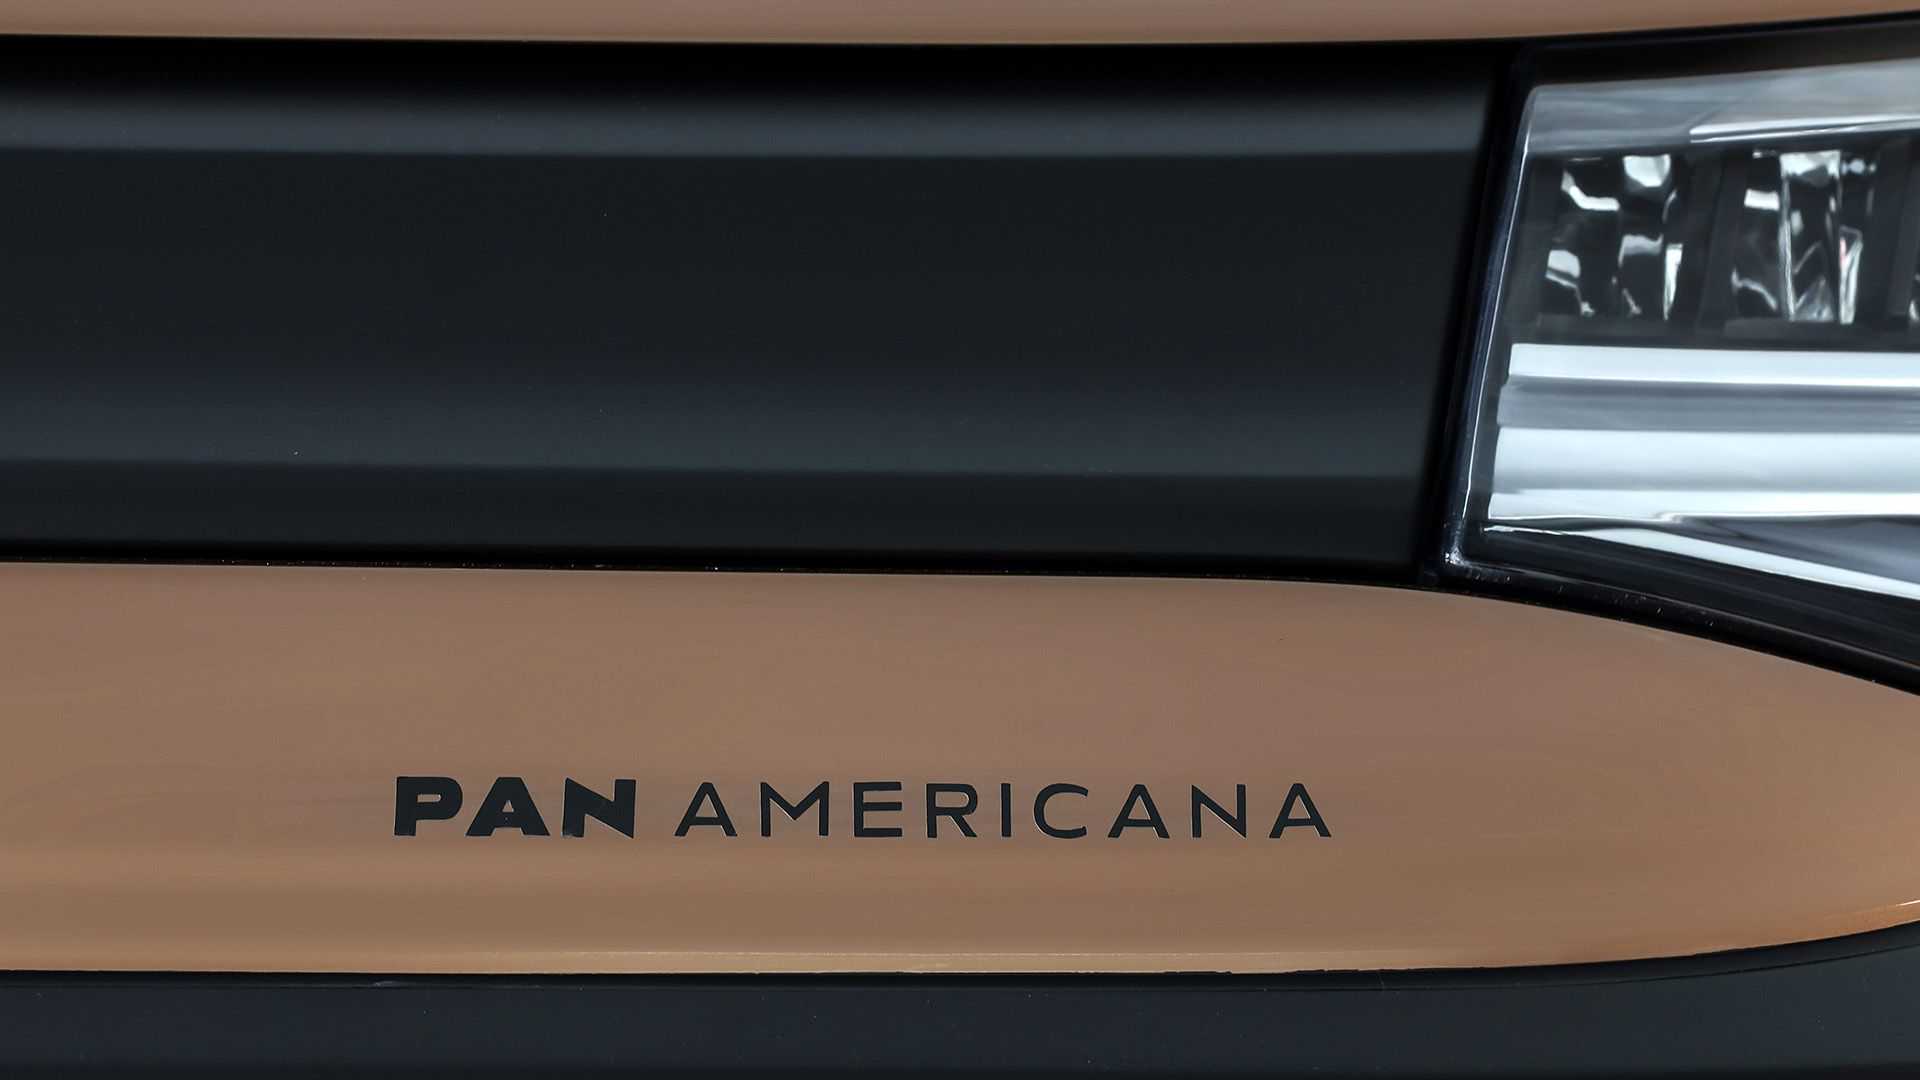 Dobrodružne ladený Volkswagen Caddy bude mať názov PanAmericana